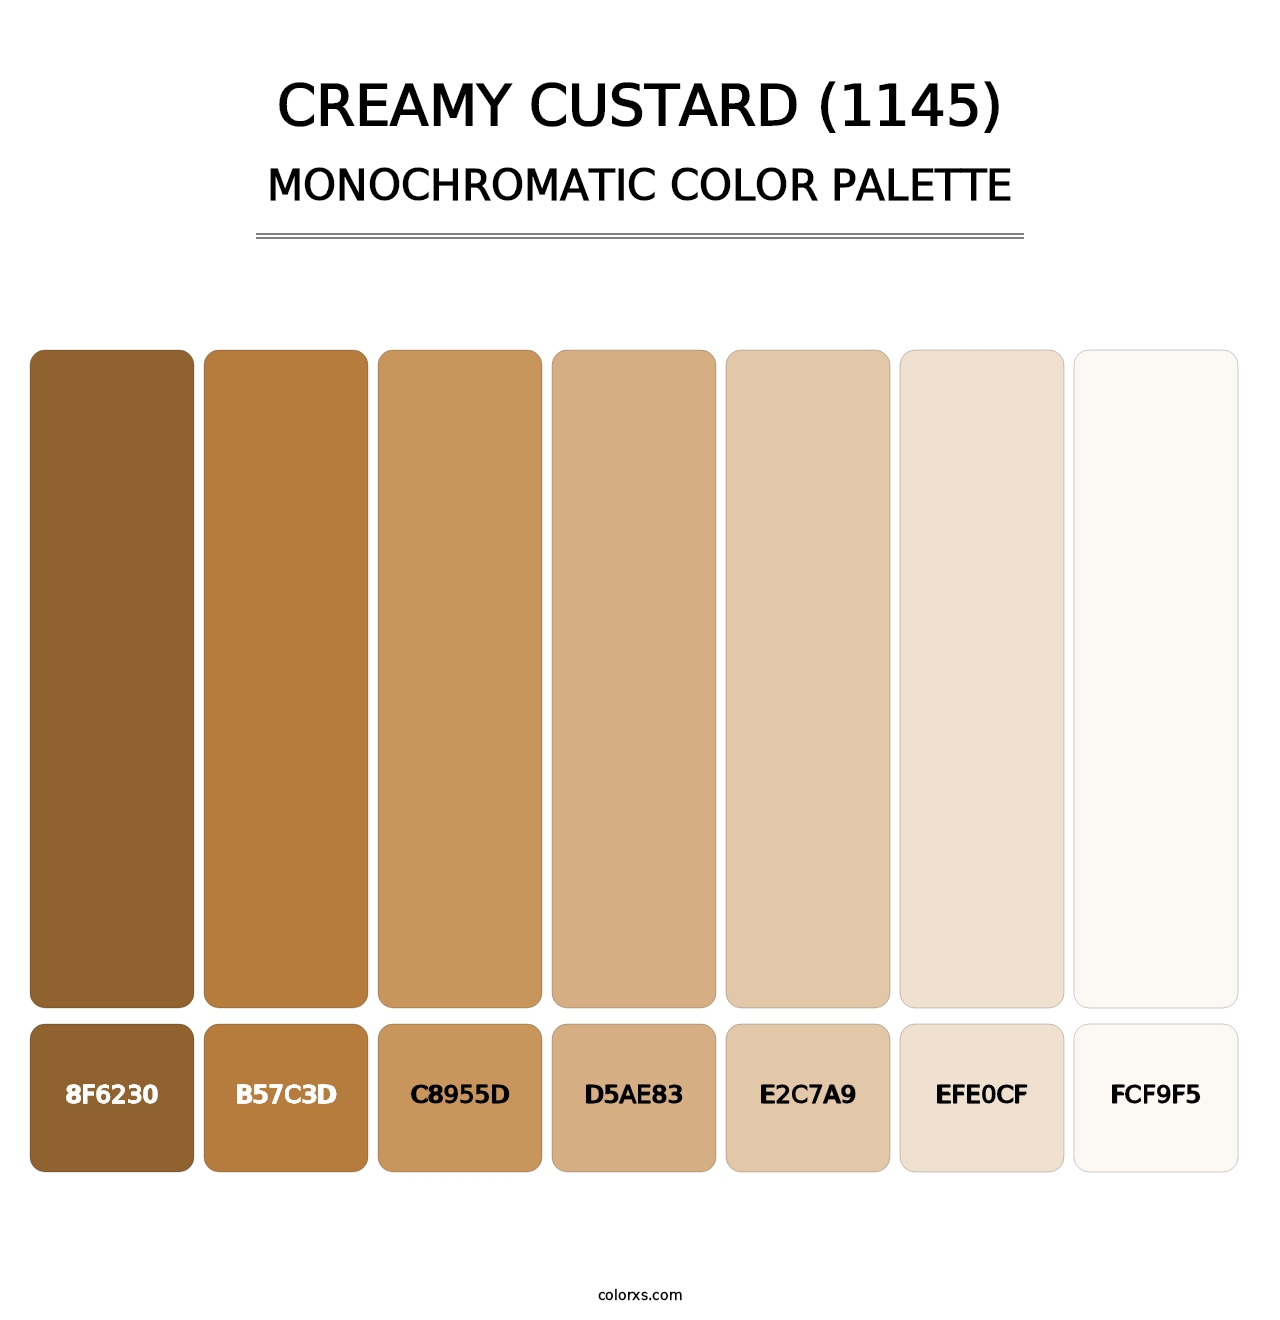 Creamy Custard (1145) - Monochromatic Color Palette